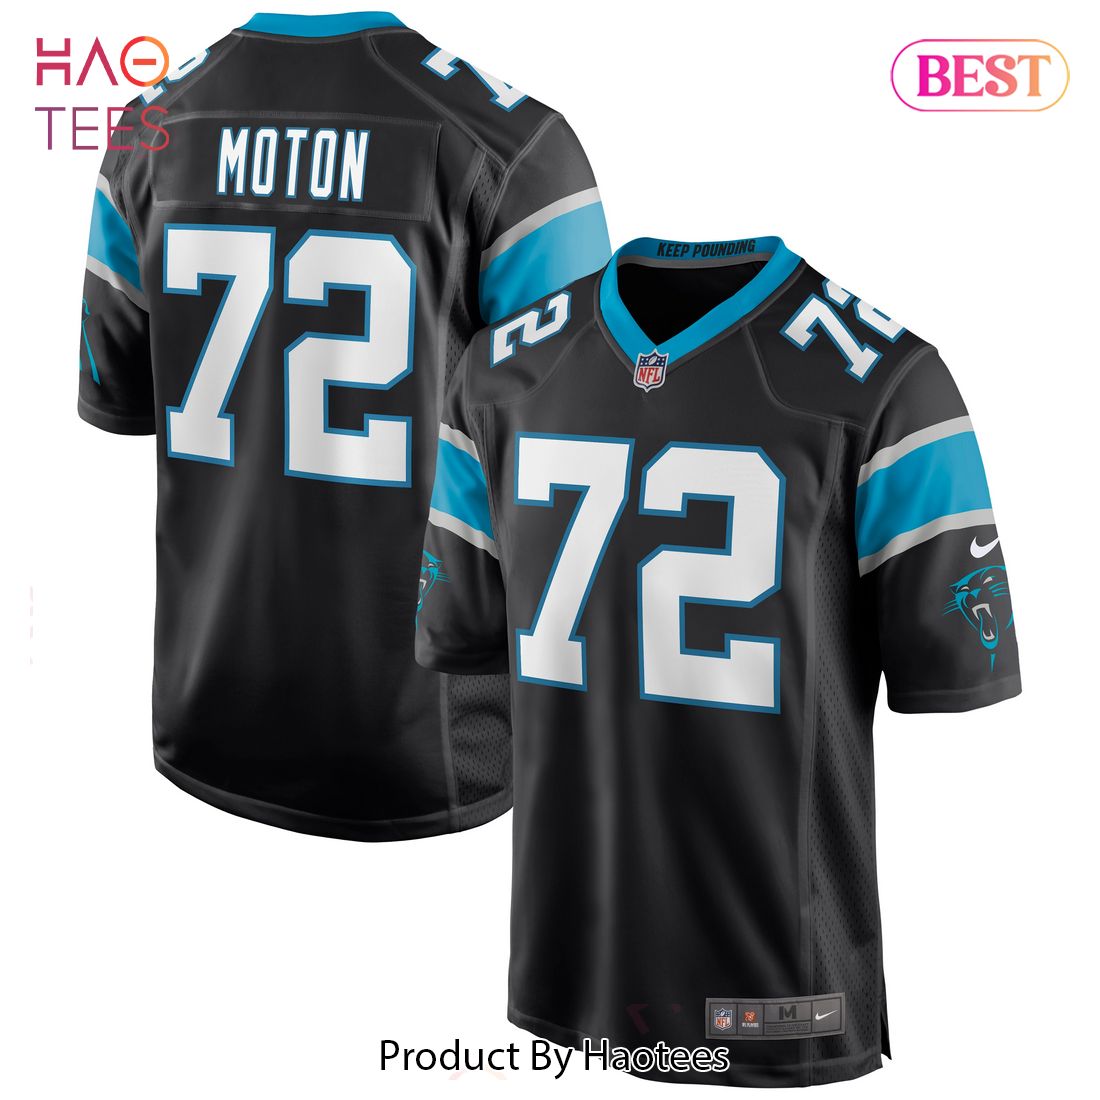 Taylor Moton Carolina Panthers Nike Game Jersey Black